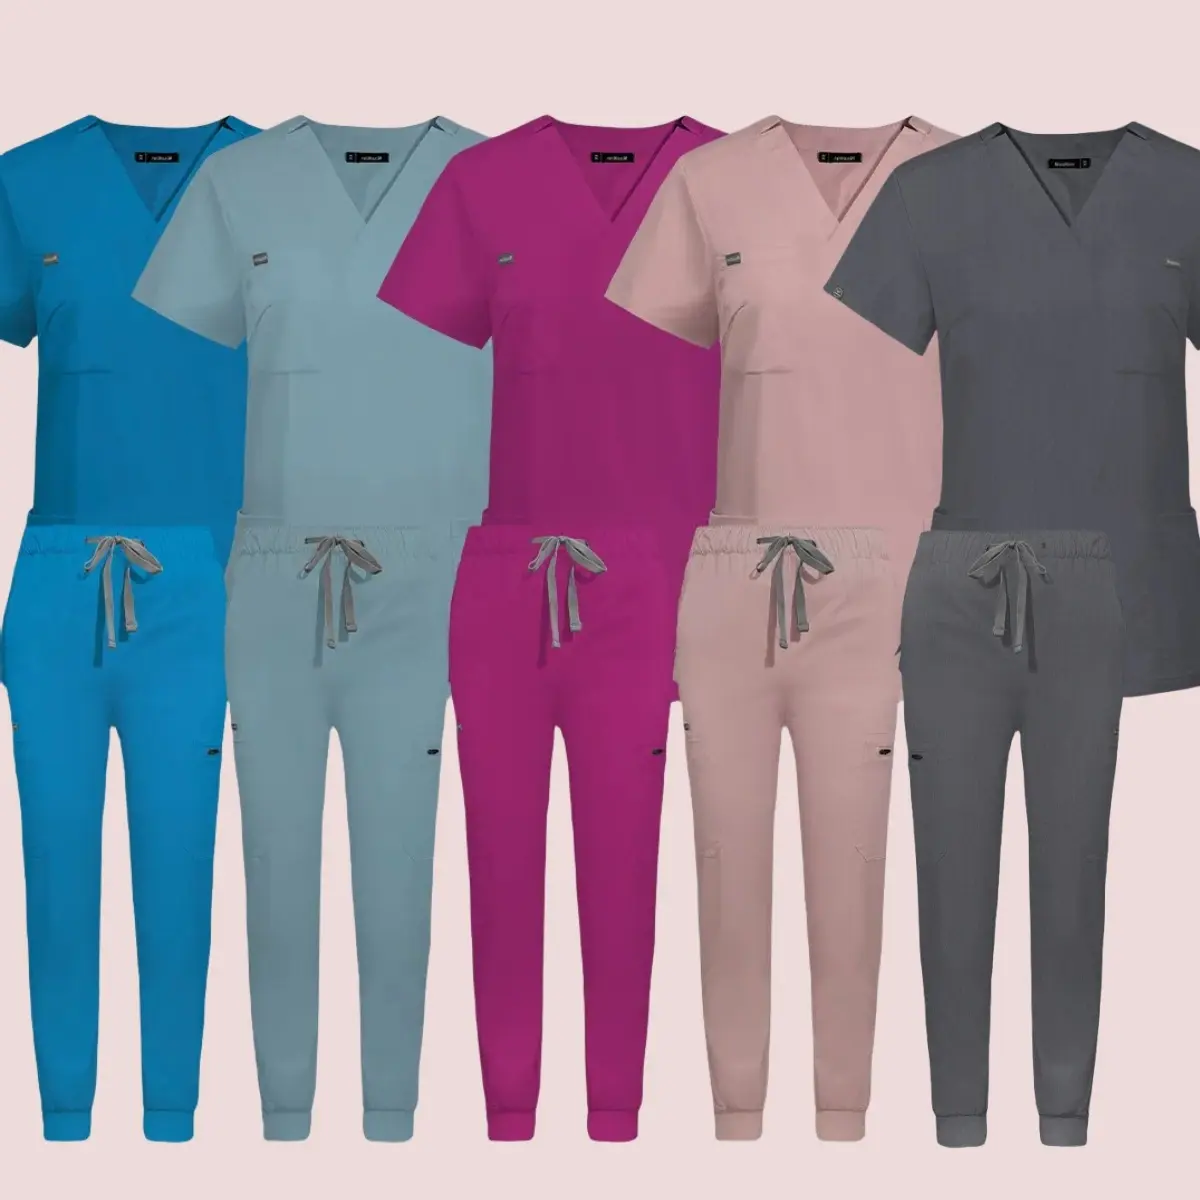 Uniforme de Enfermería de manga corta Multicolor para mujer, conjunto de exfoliación de médico de tienda de mascotas, ropa de trabajo de Cirugía médica, pantalones superiores de Hospital